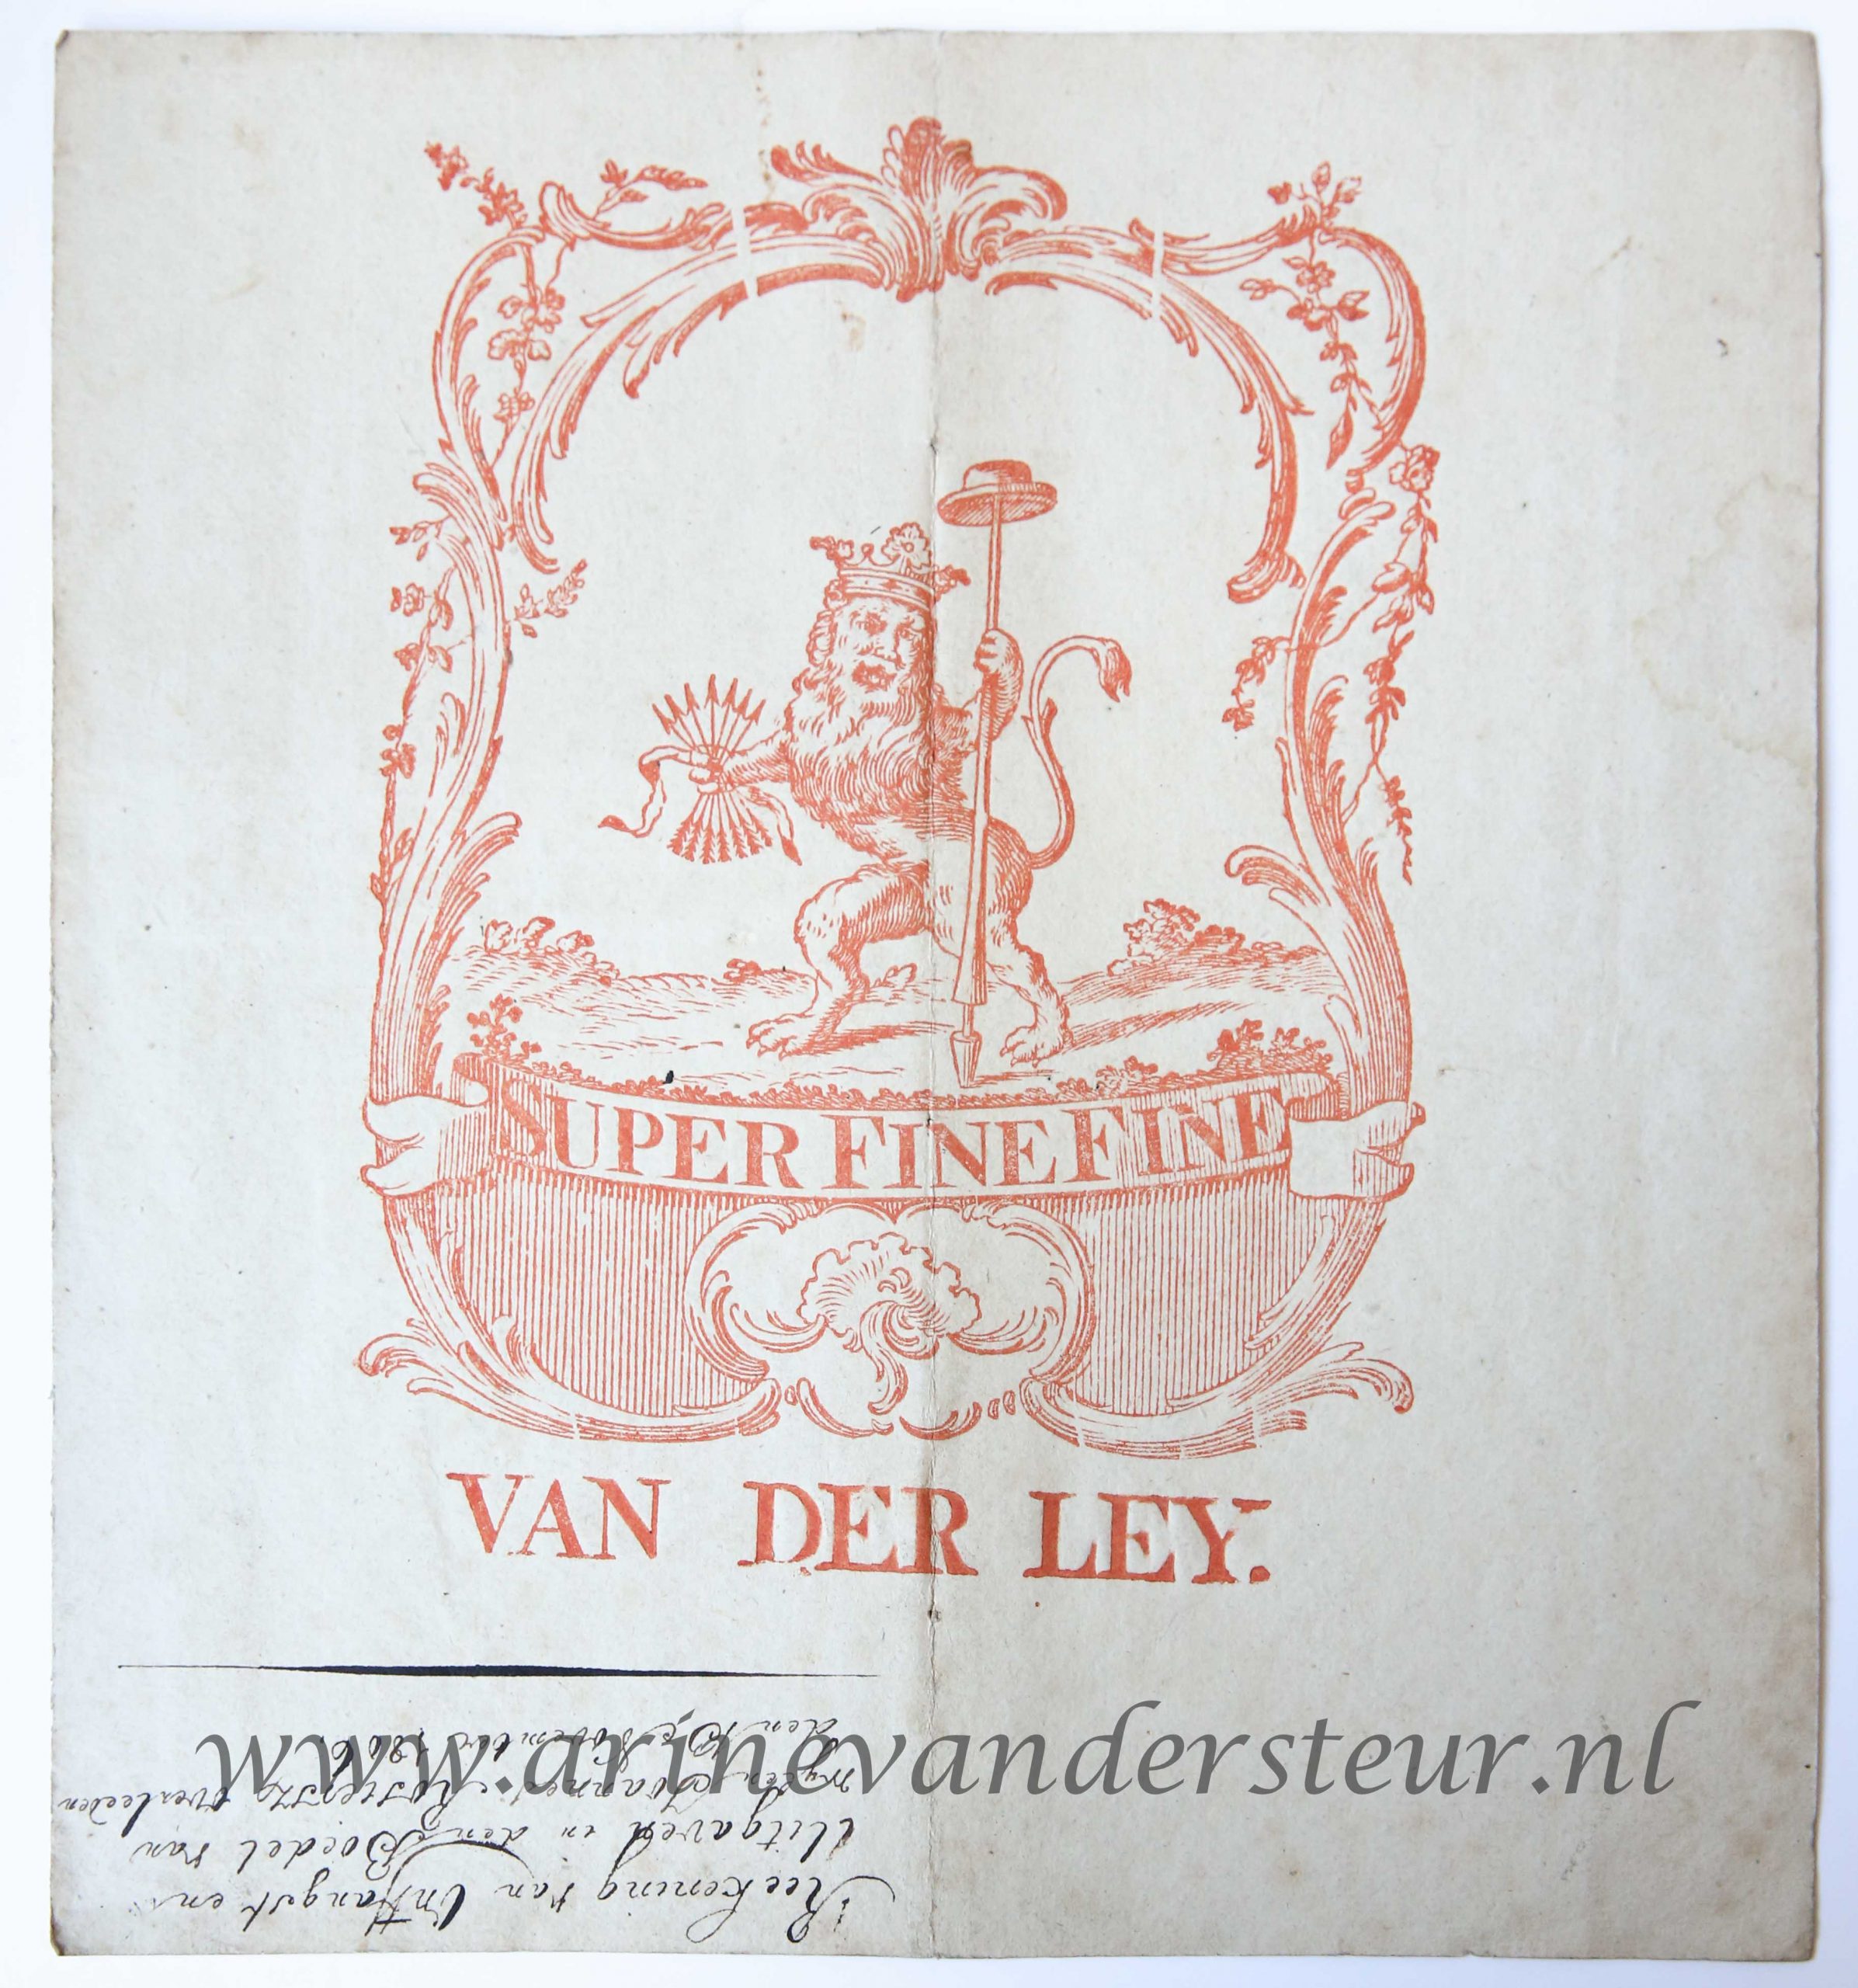 [Paper maker device, printed watermark] Van der Ley. Printed in red ink, dating ca. 1780.